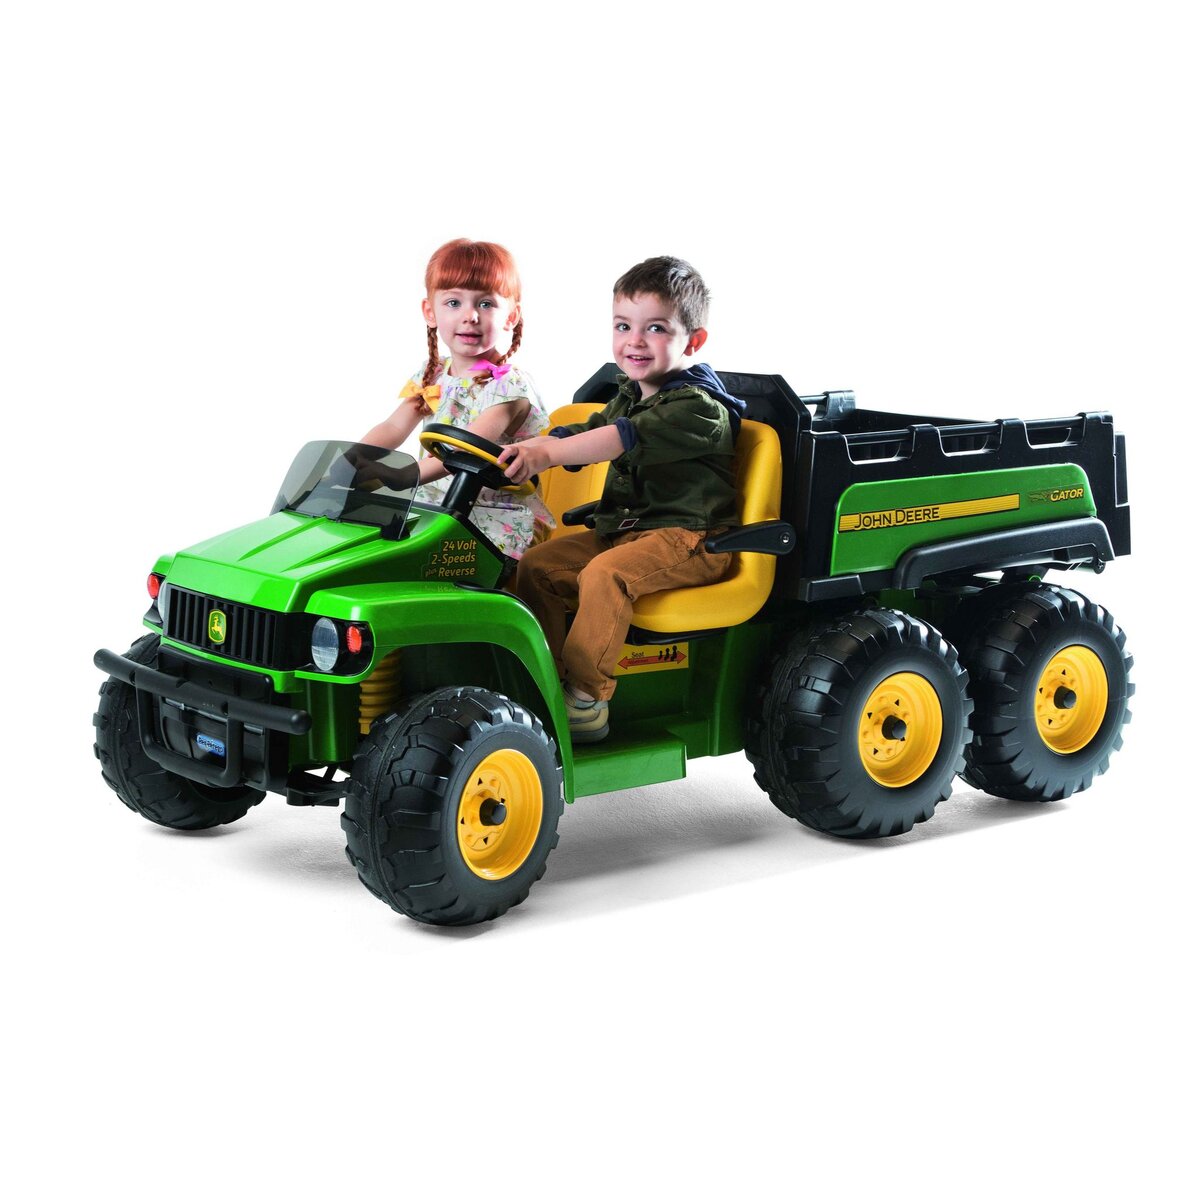 PEG PEREGO Tracteur John Derre Gator HPX 6X4 24 volts